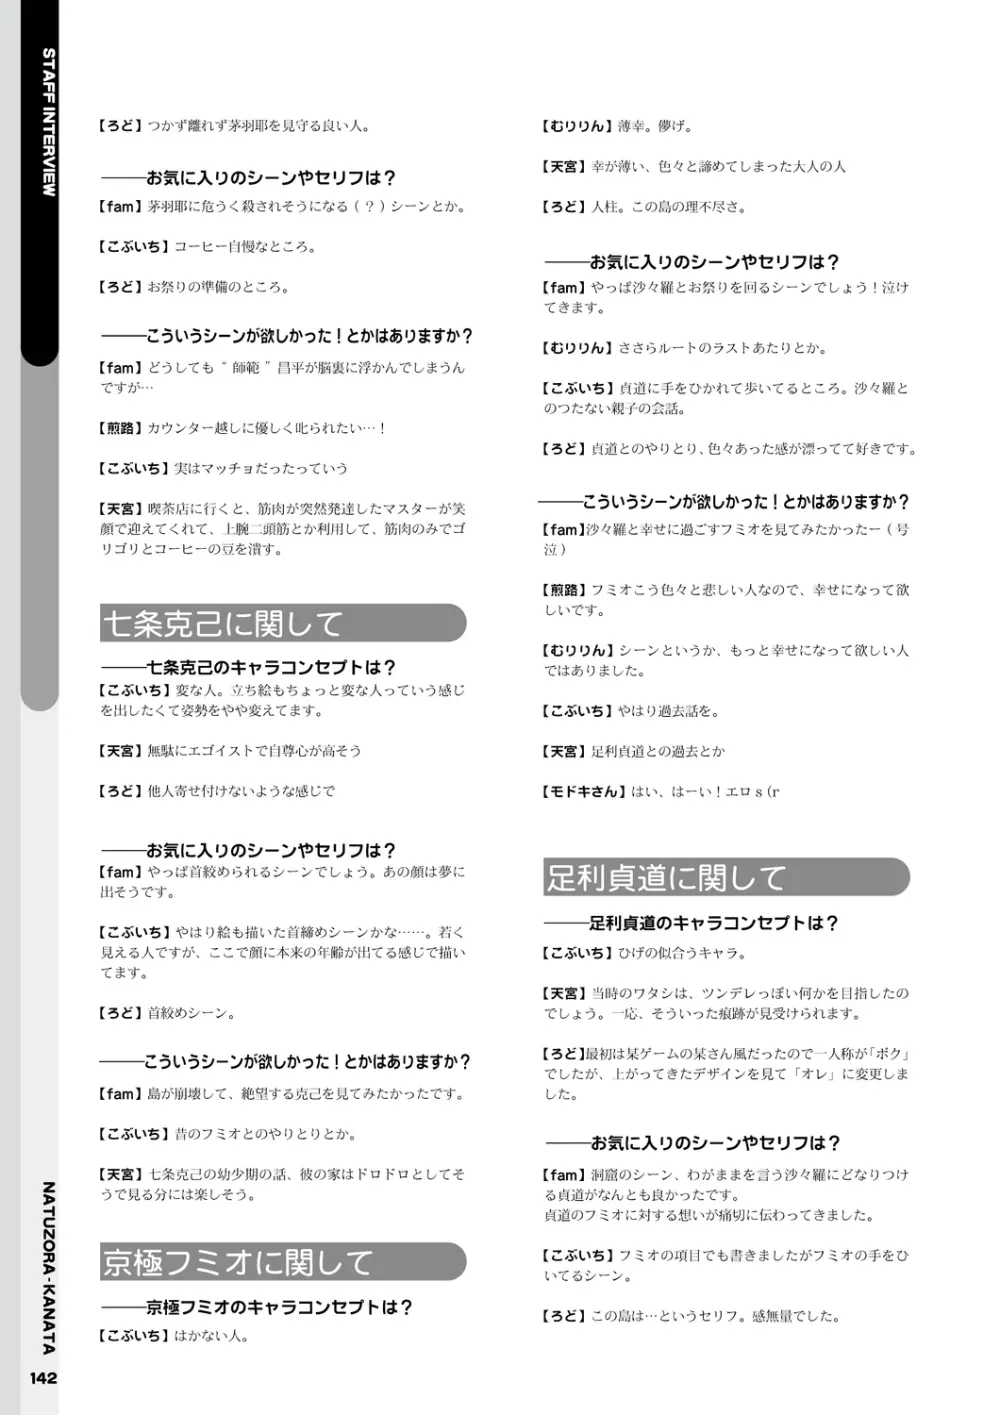 夏空カナタ オフィシャル・ビジュアルファンブック 144ページ